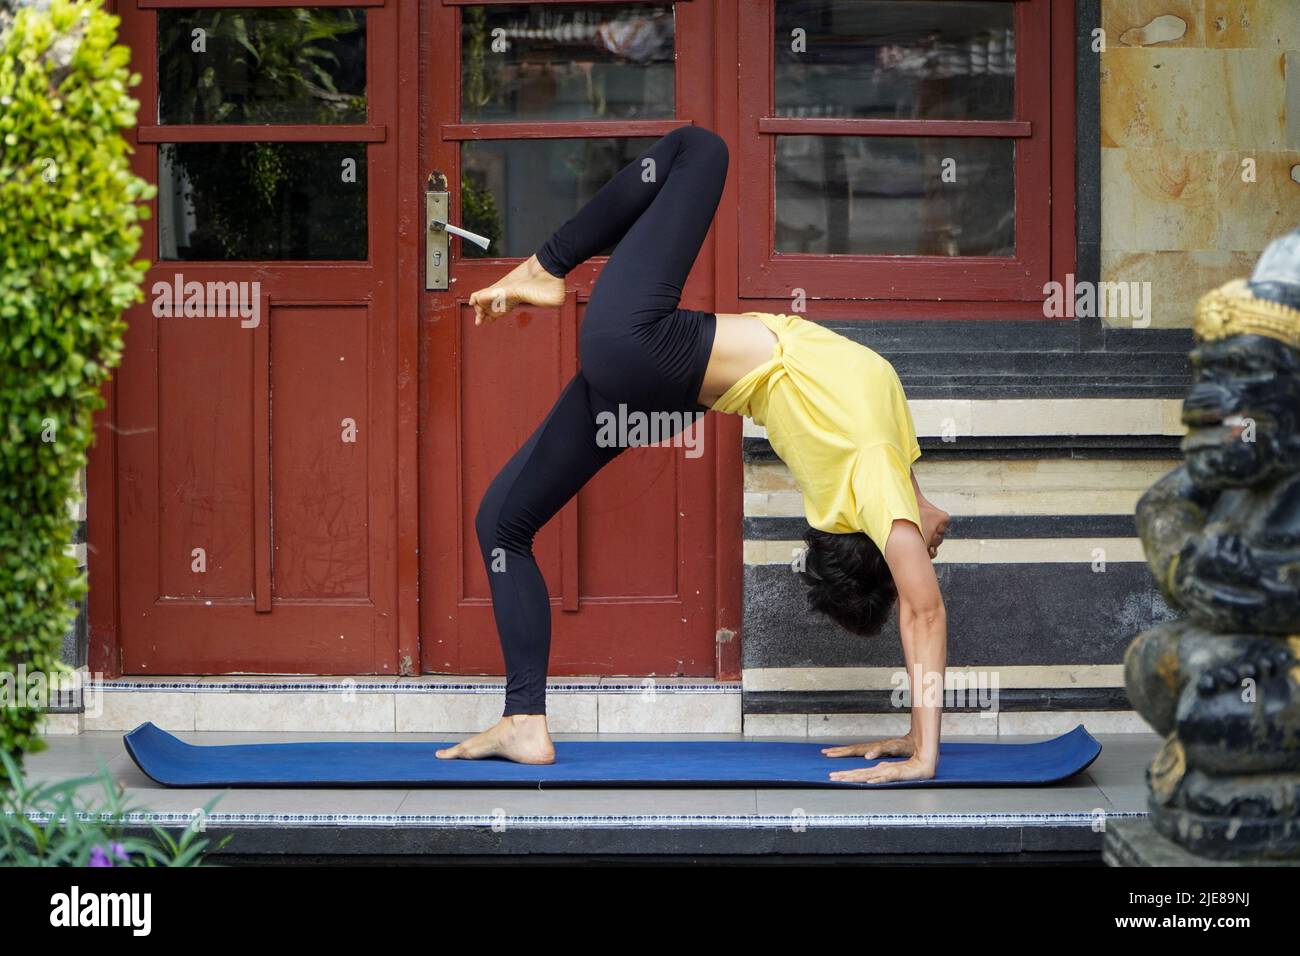 En su terraza, una joven asiática con un aspecto impresionante está practicando Yoga mientras se divierte un corte de pelo corto, una camisa amarilla y leggings negros. S Foto de stock